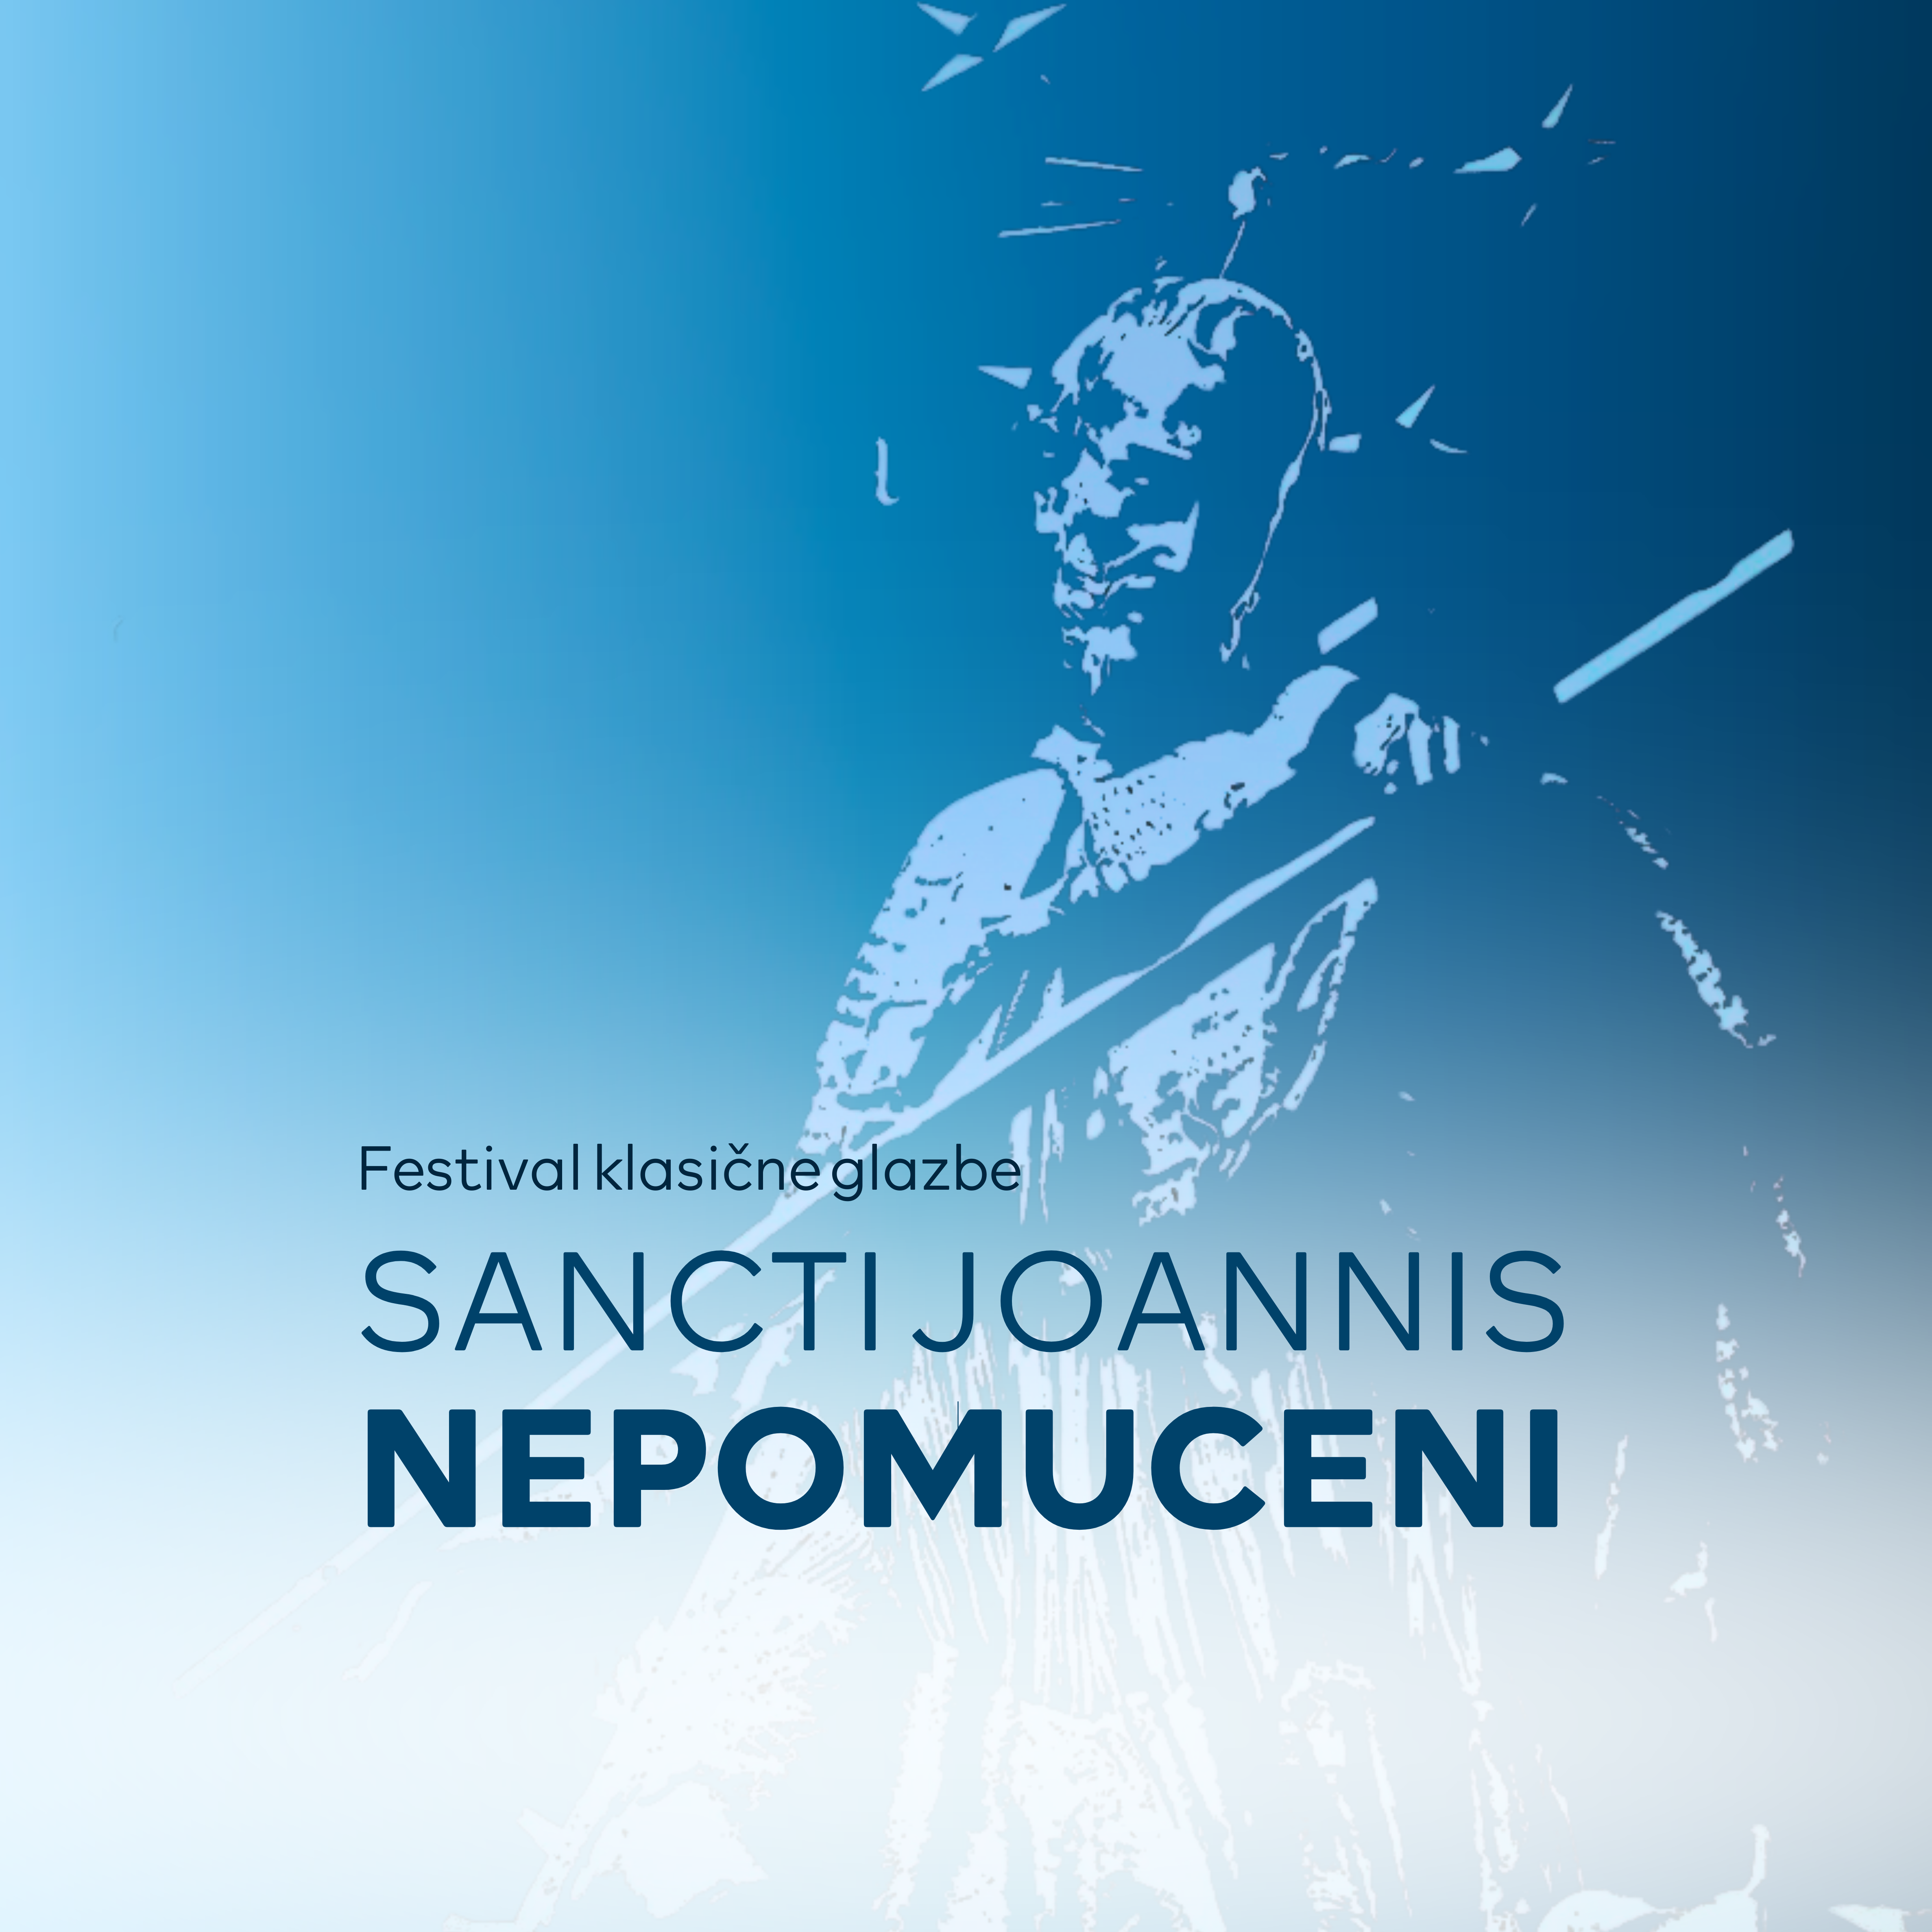 Sancti Joannis Nepomuceni